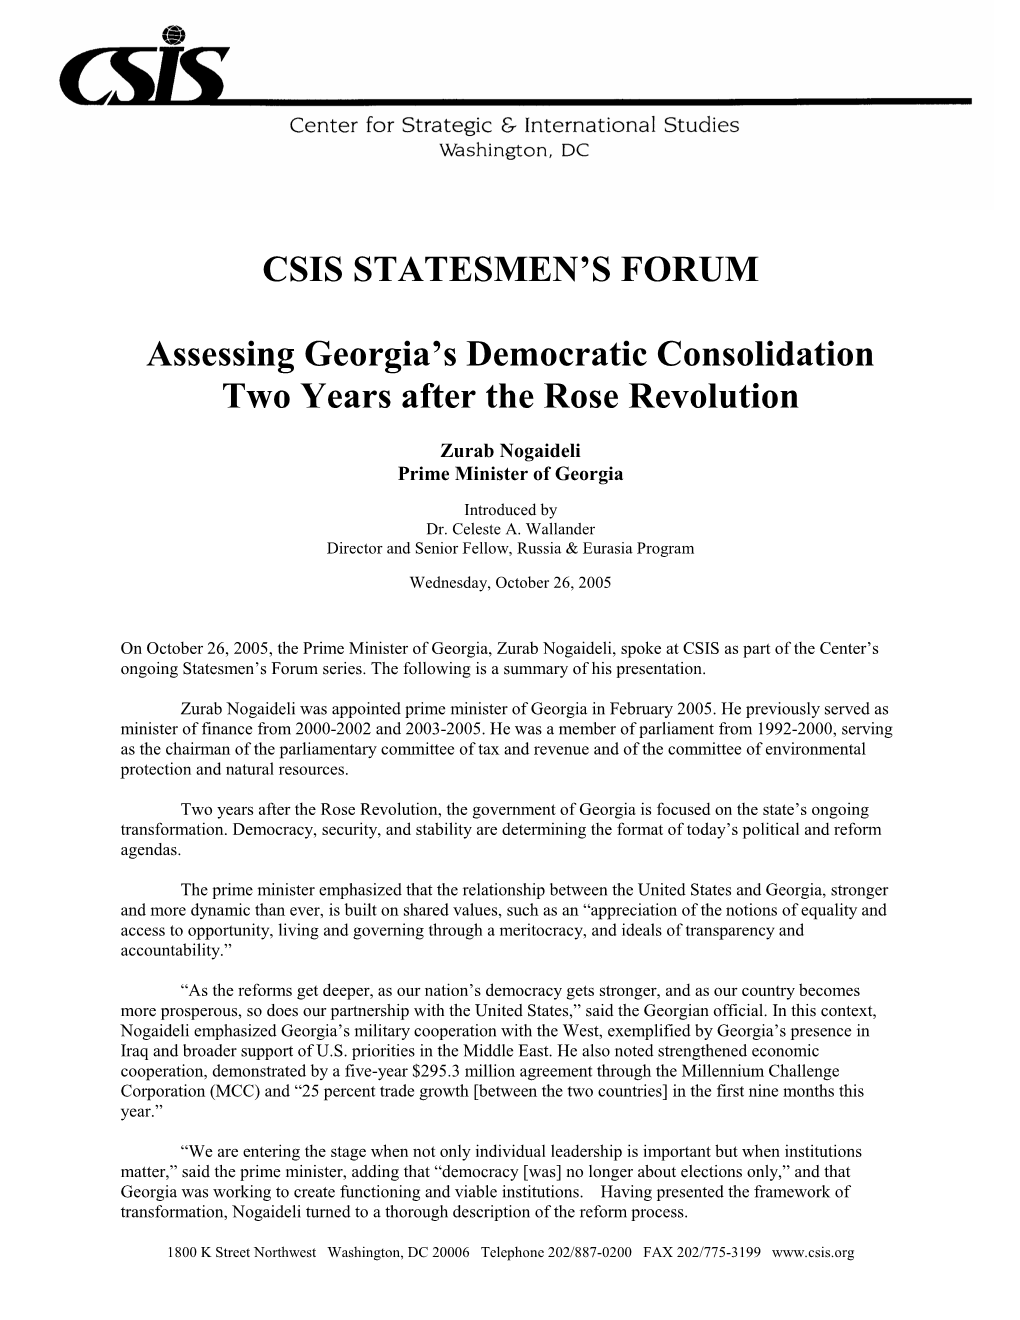 CSIS STATESMEN's FORUM Assessing Georgia's Democratic